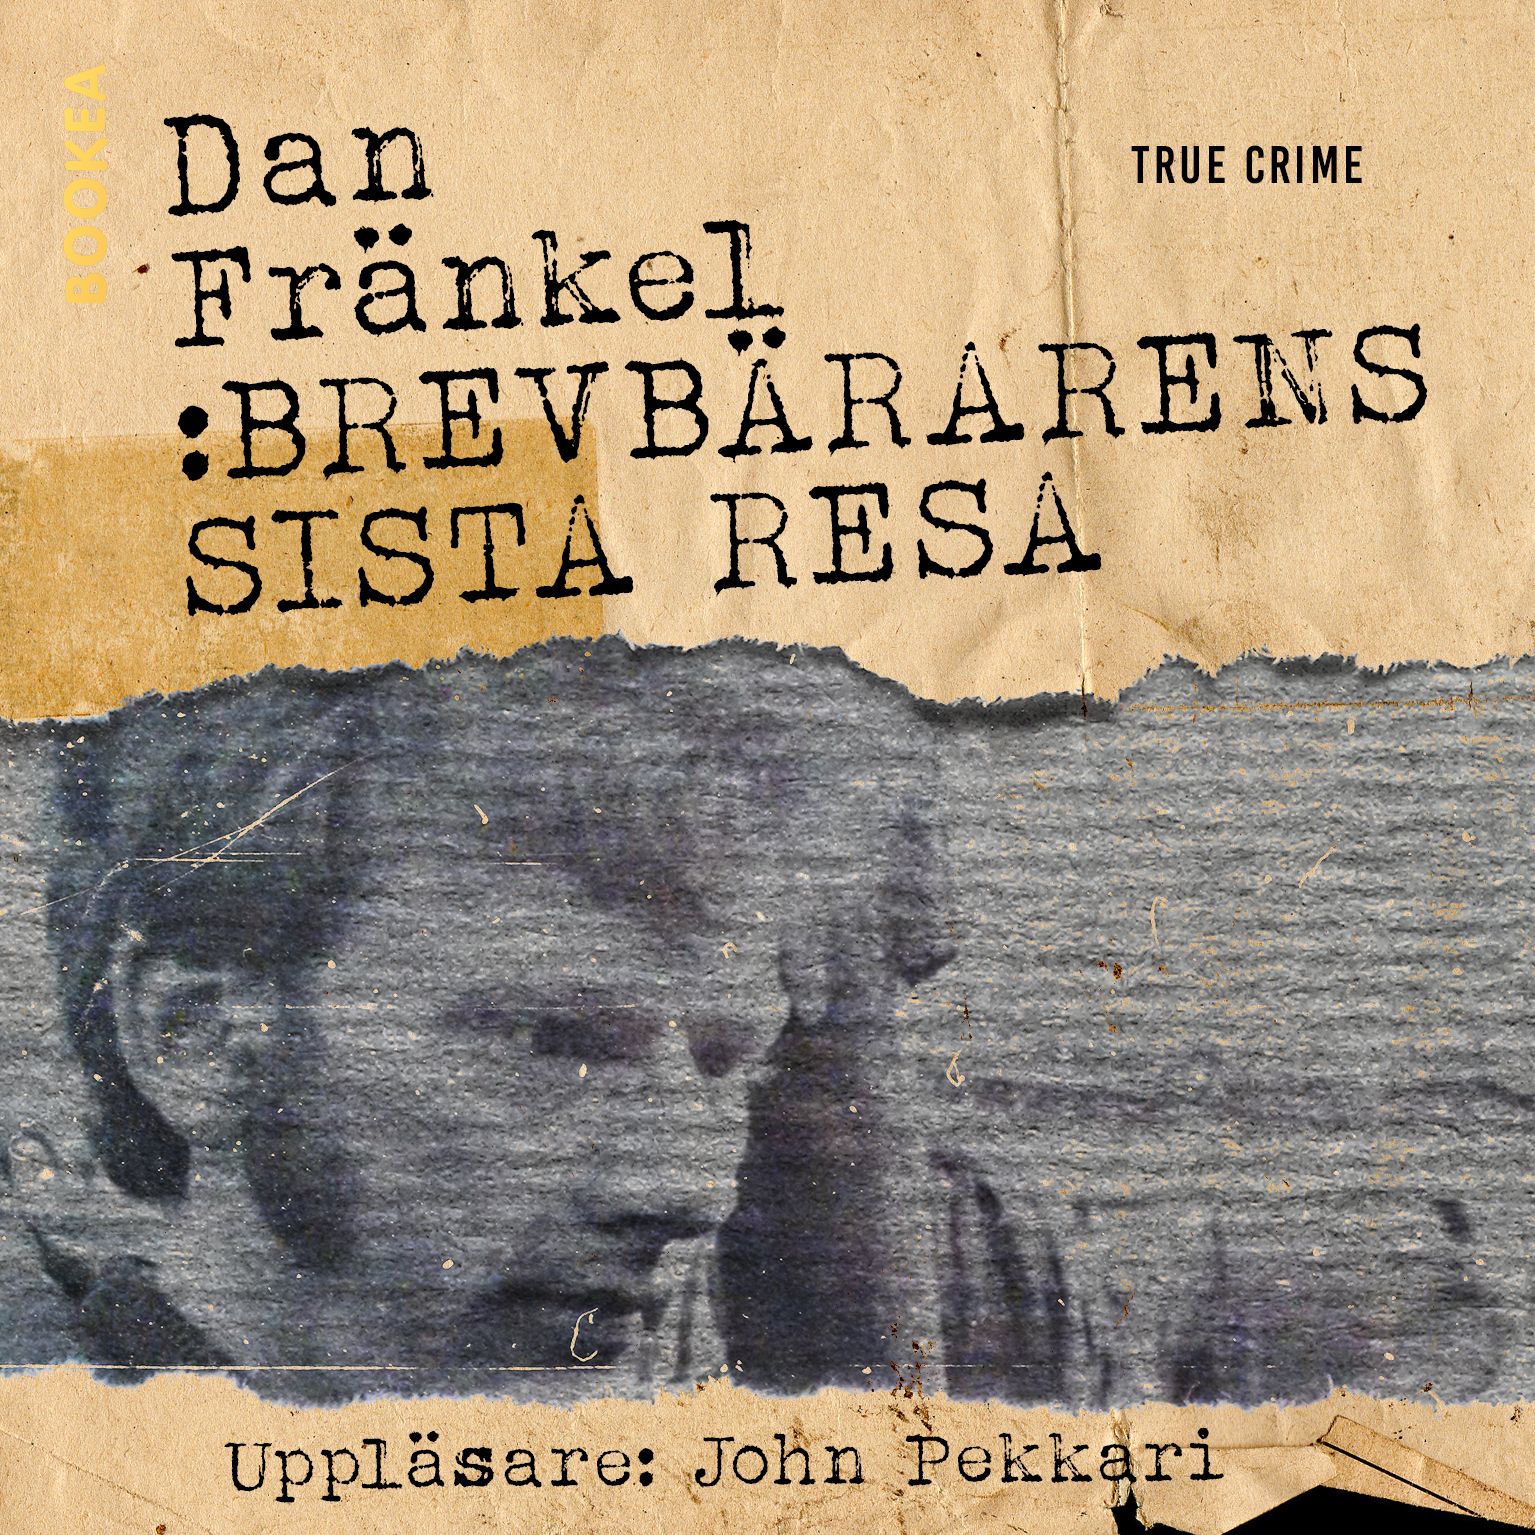 Brevbärarens sista resa, audiobook by Dan Fränkel